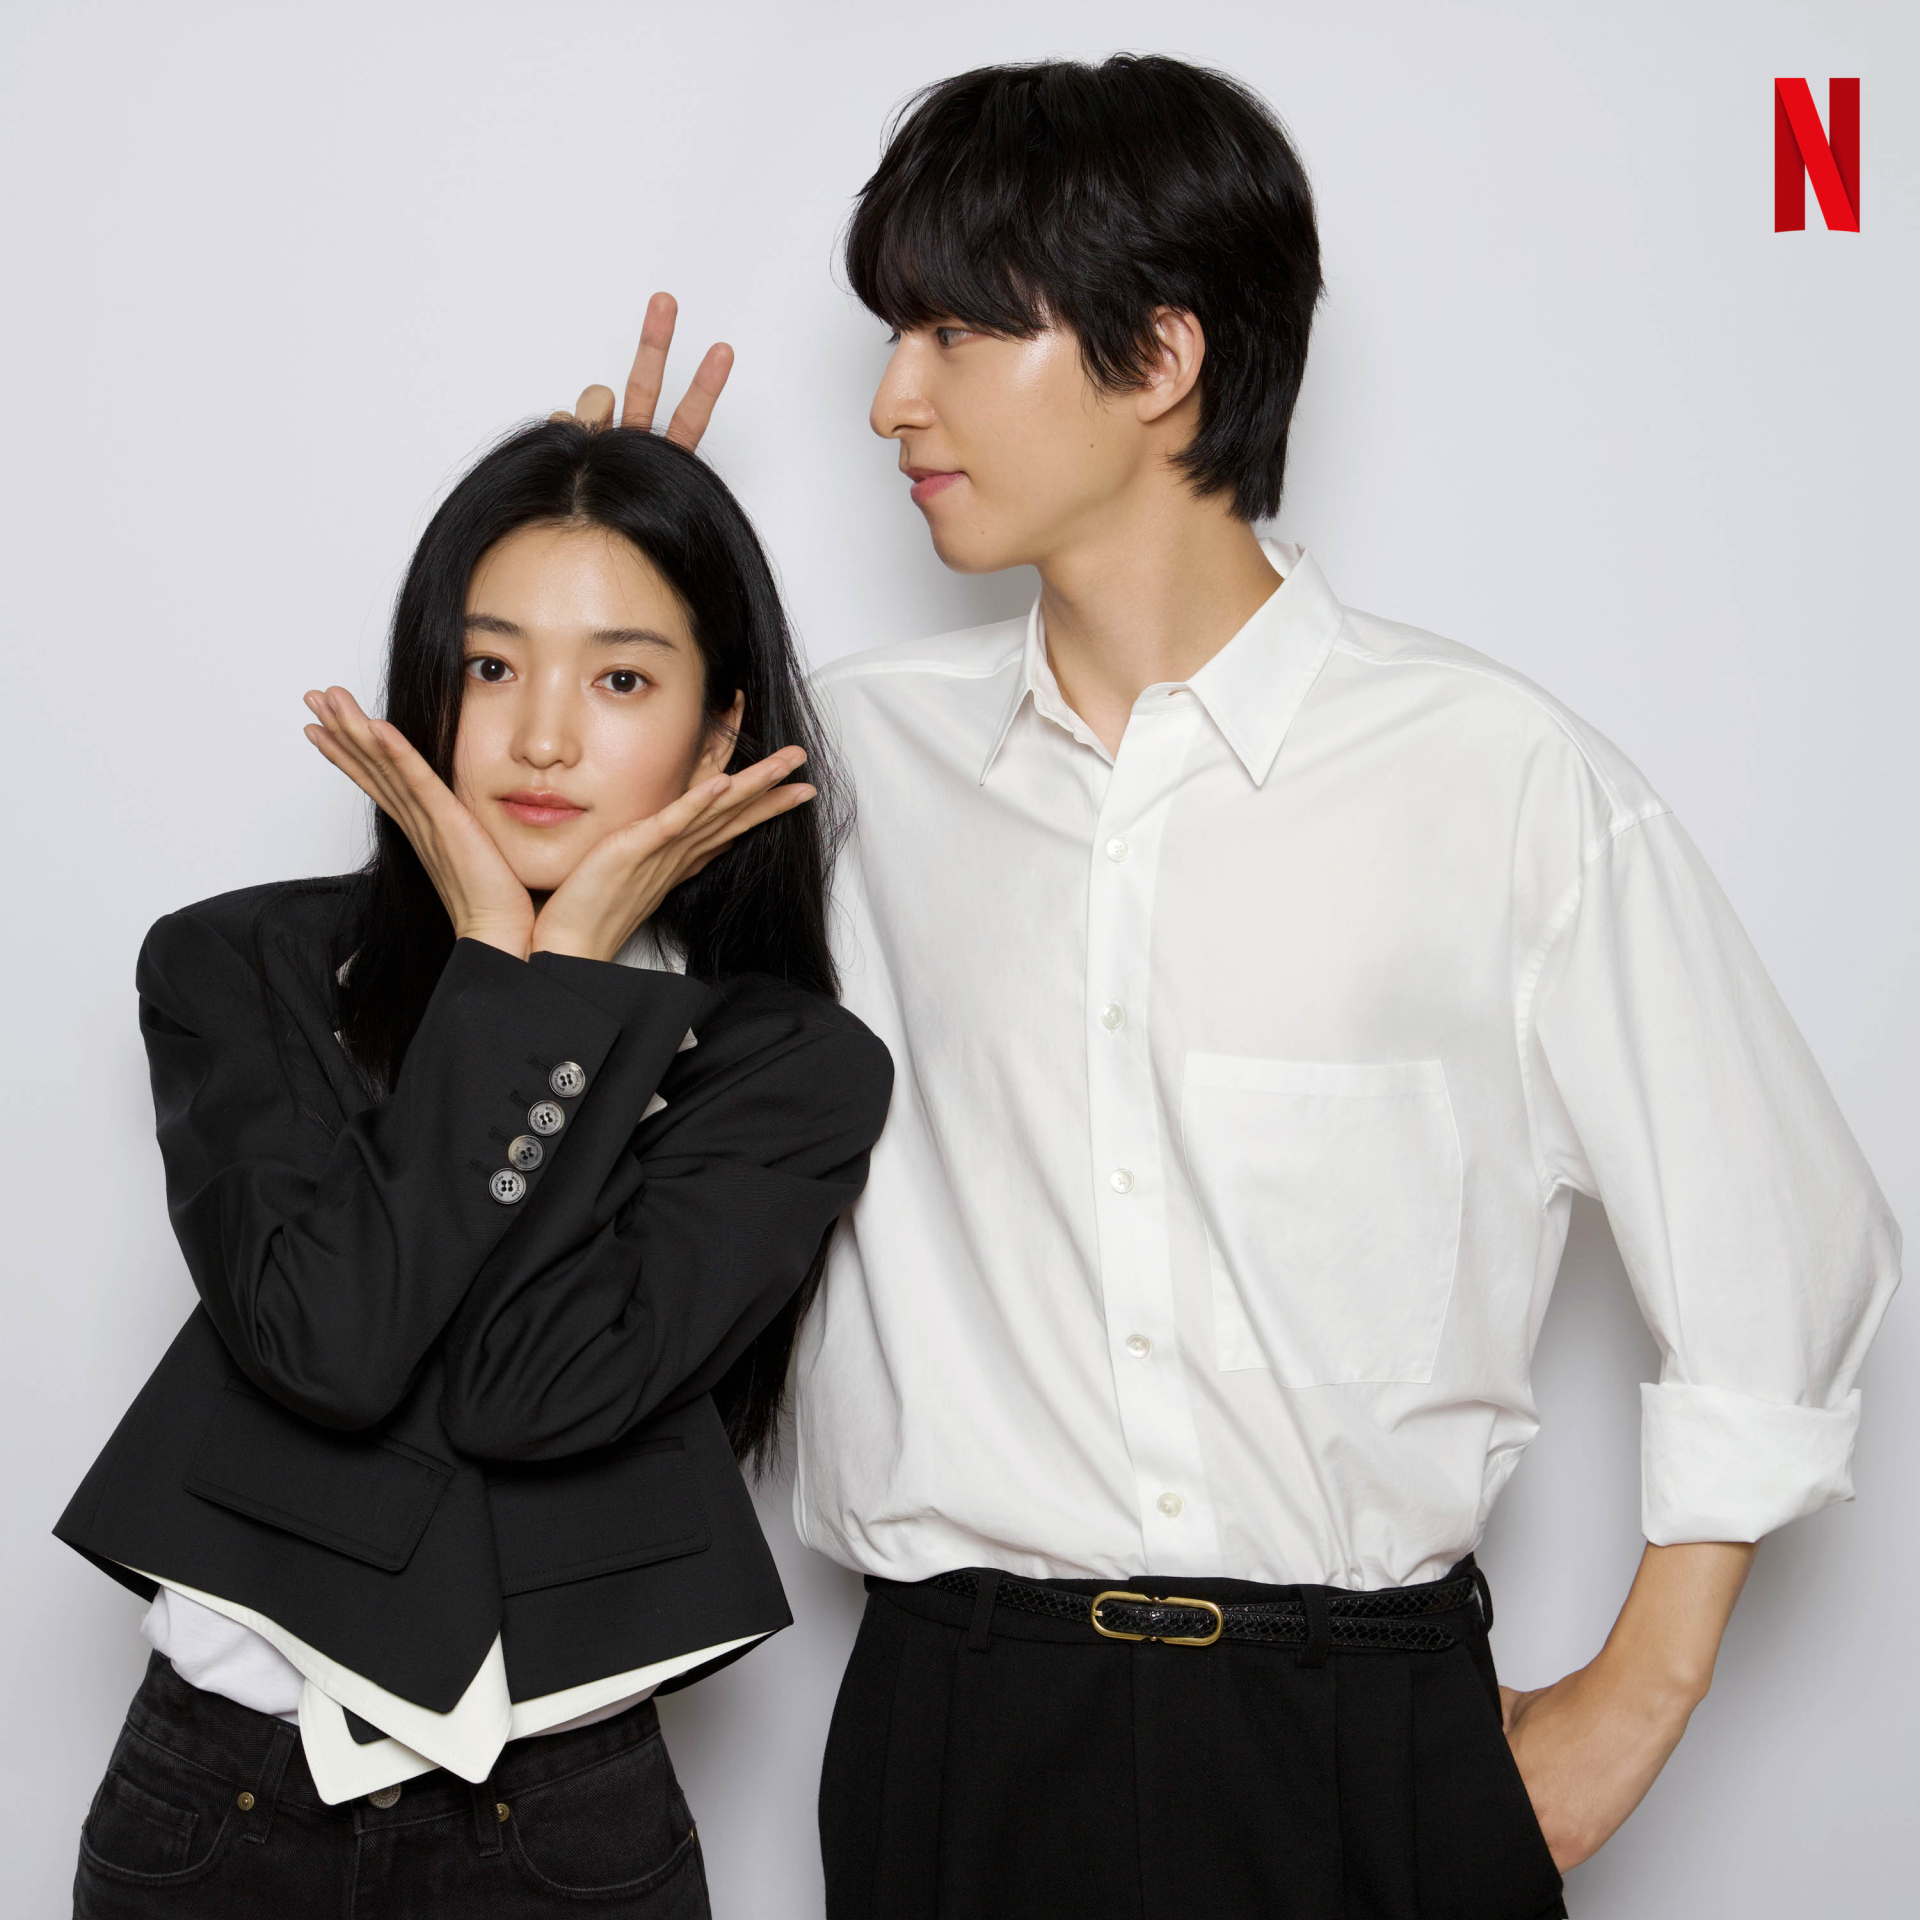 Cặp đôi phim 'Ác quỷ' Kim Tae Ri - Hong Kyung tái hợp trong phim hoạt hình đầu tiên của Netflix Hàn 'Lost In Starlight' - ảnh 2